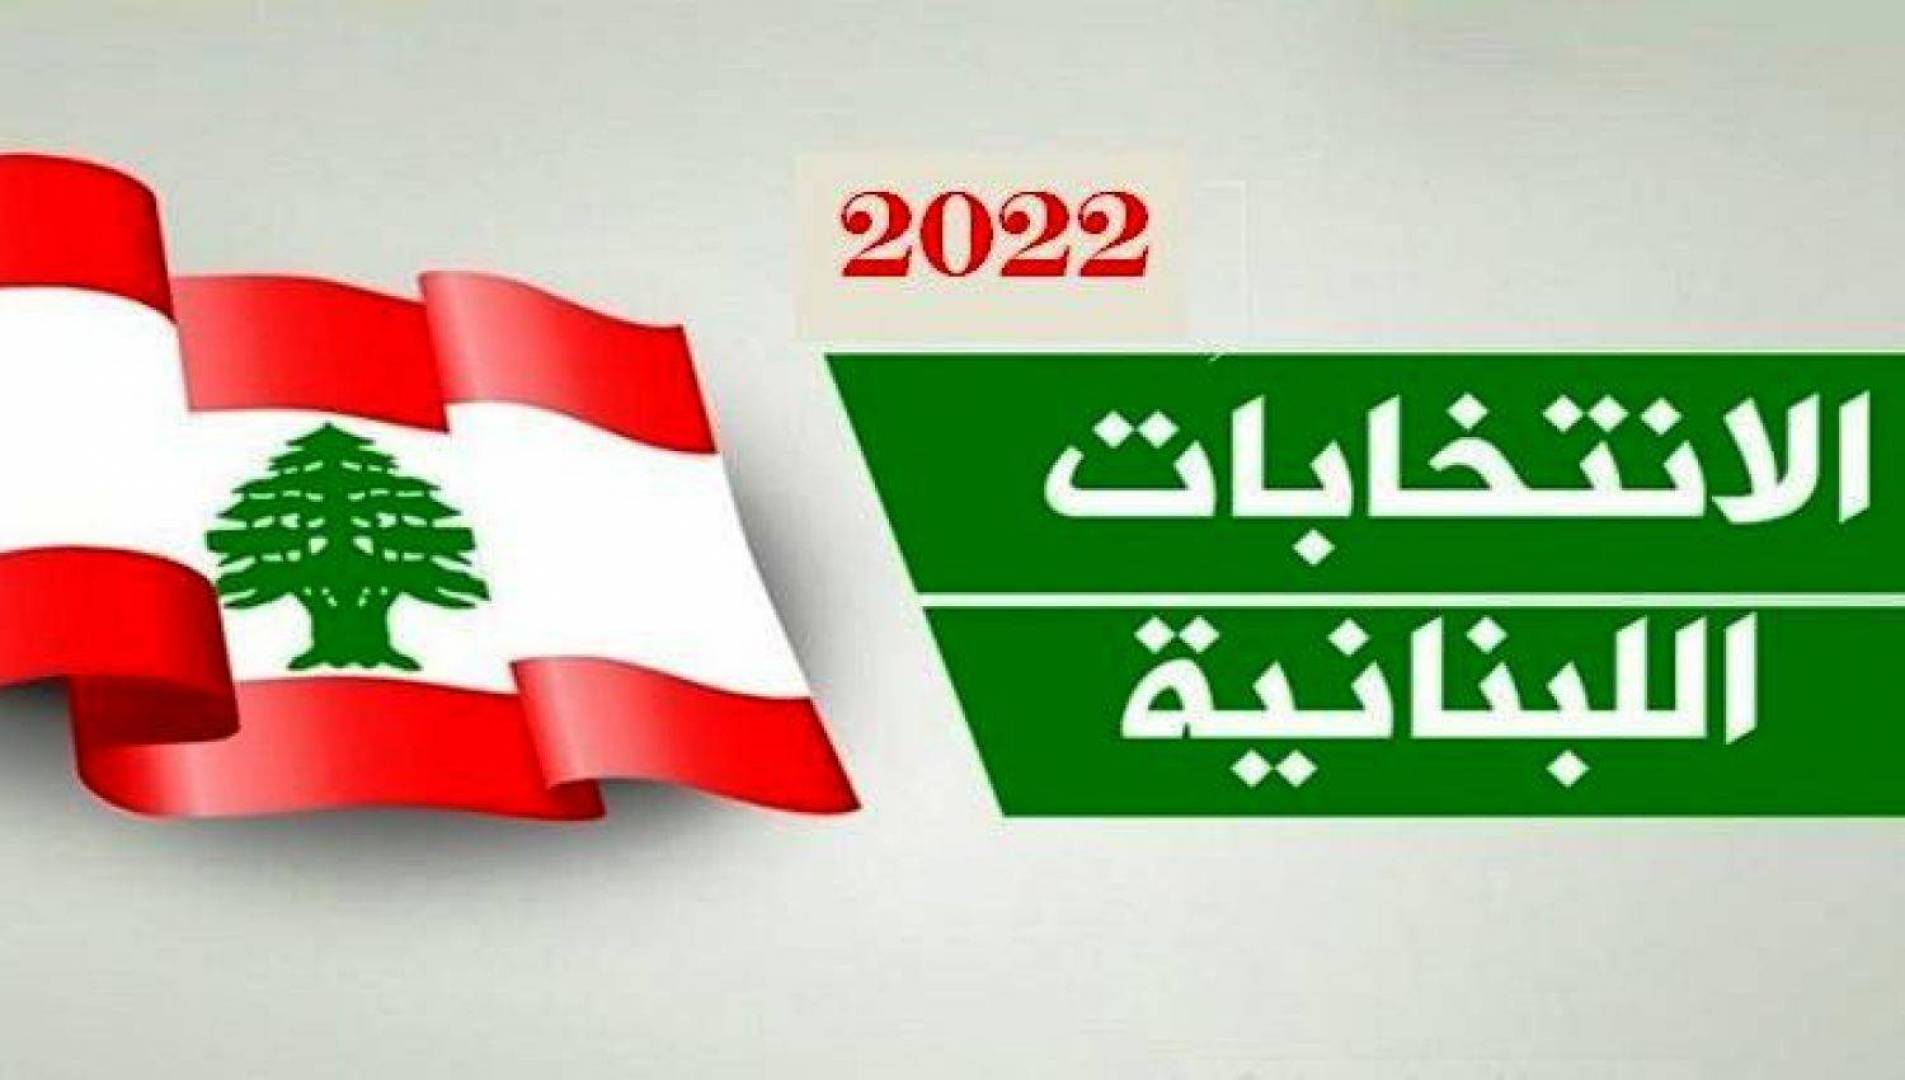 نتائج انتخابات البرلمان اللبناني حسب وزارة الداخلية اللبنانية.